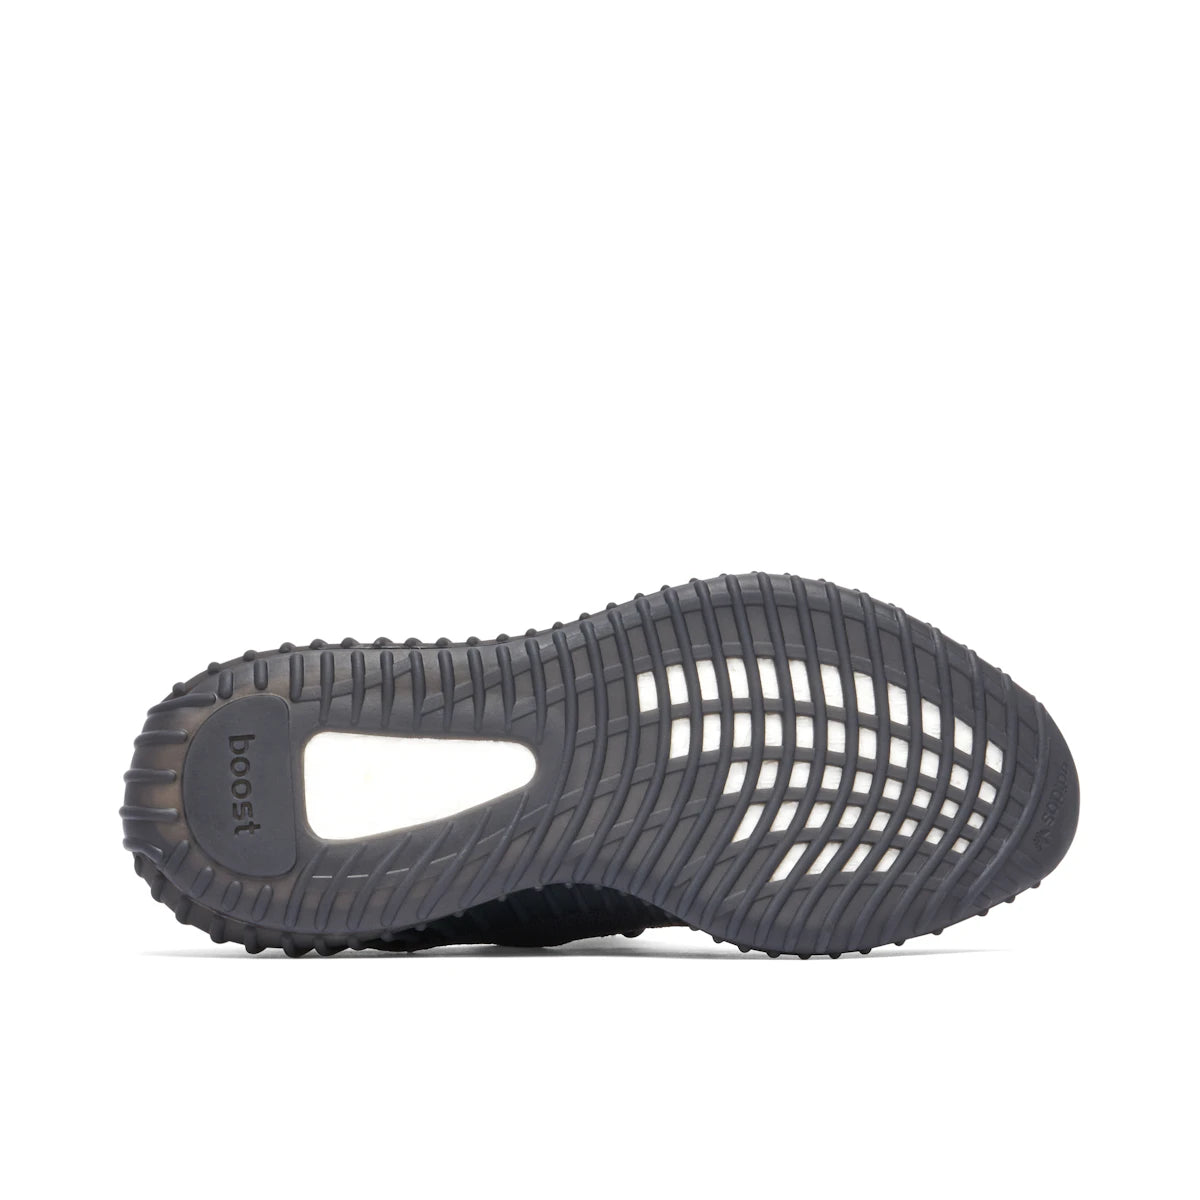 Adidas Yeezy Boost 350 V2 Onyx | Yeezy | KershKicks